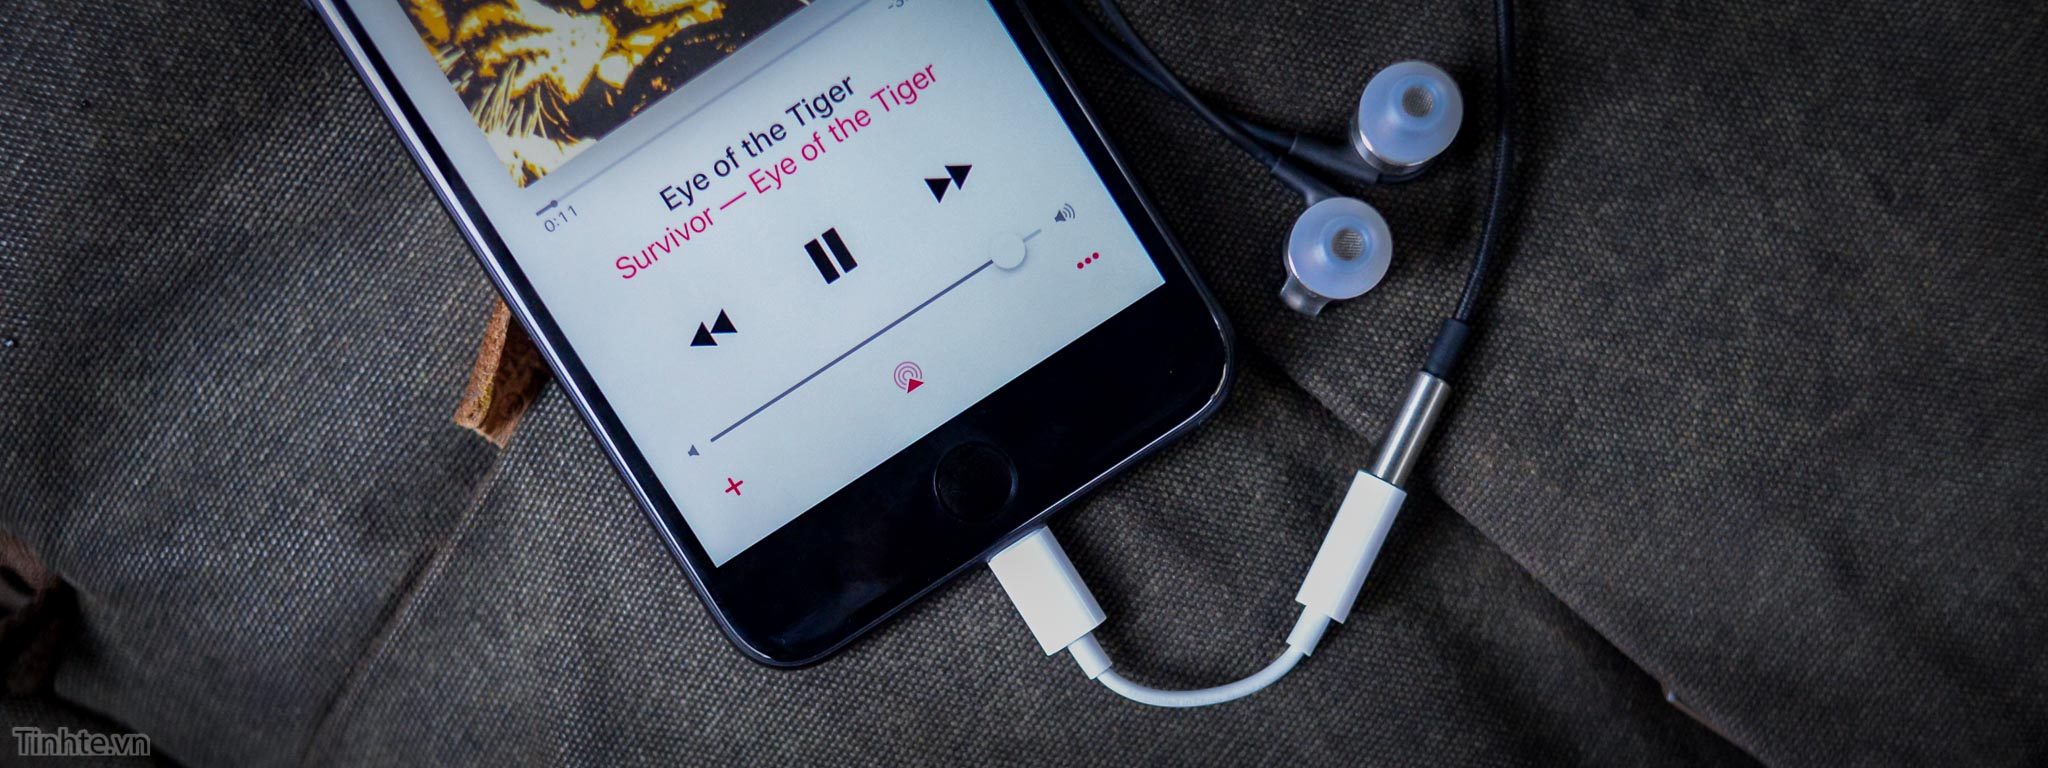 Thử nghe nhạc trên iPhone 7 Plus bằng cổng chuyển lightning ra 3.5, so sánh nhanh với iPhone 6s Plus